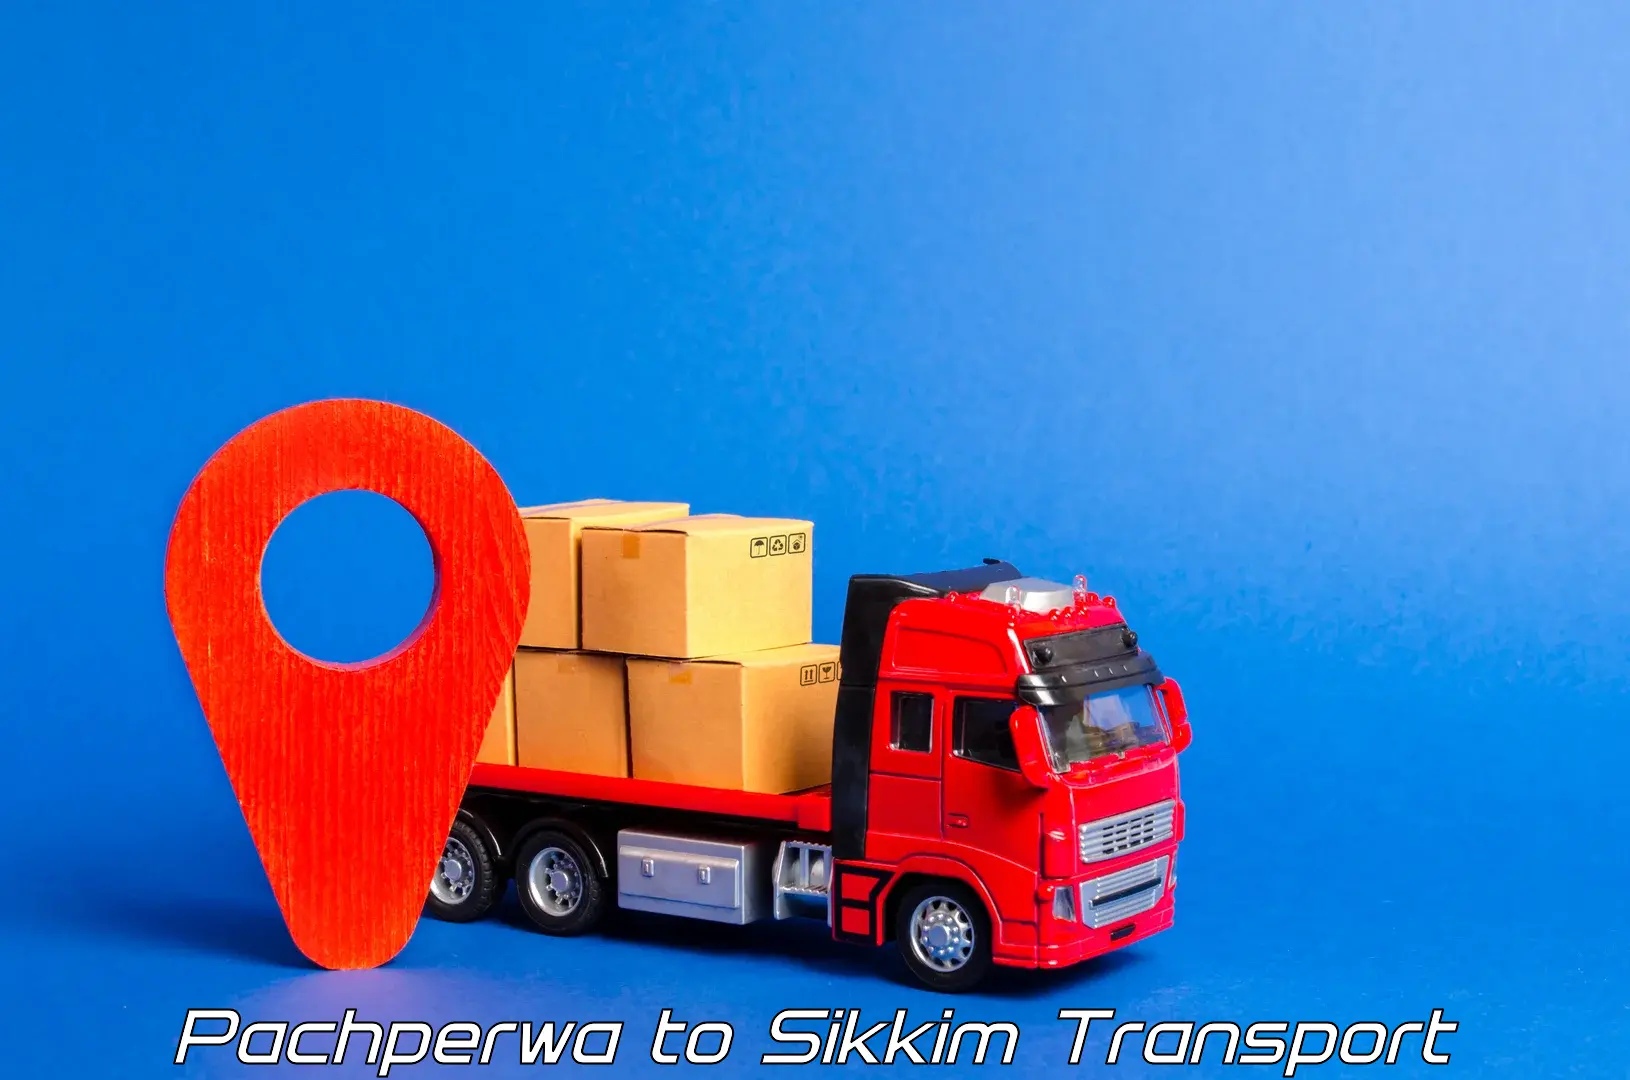 Shipping partner Pachperwa to West Sikkim